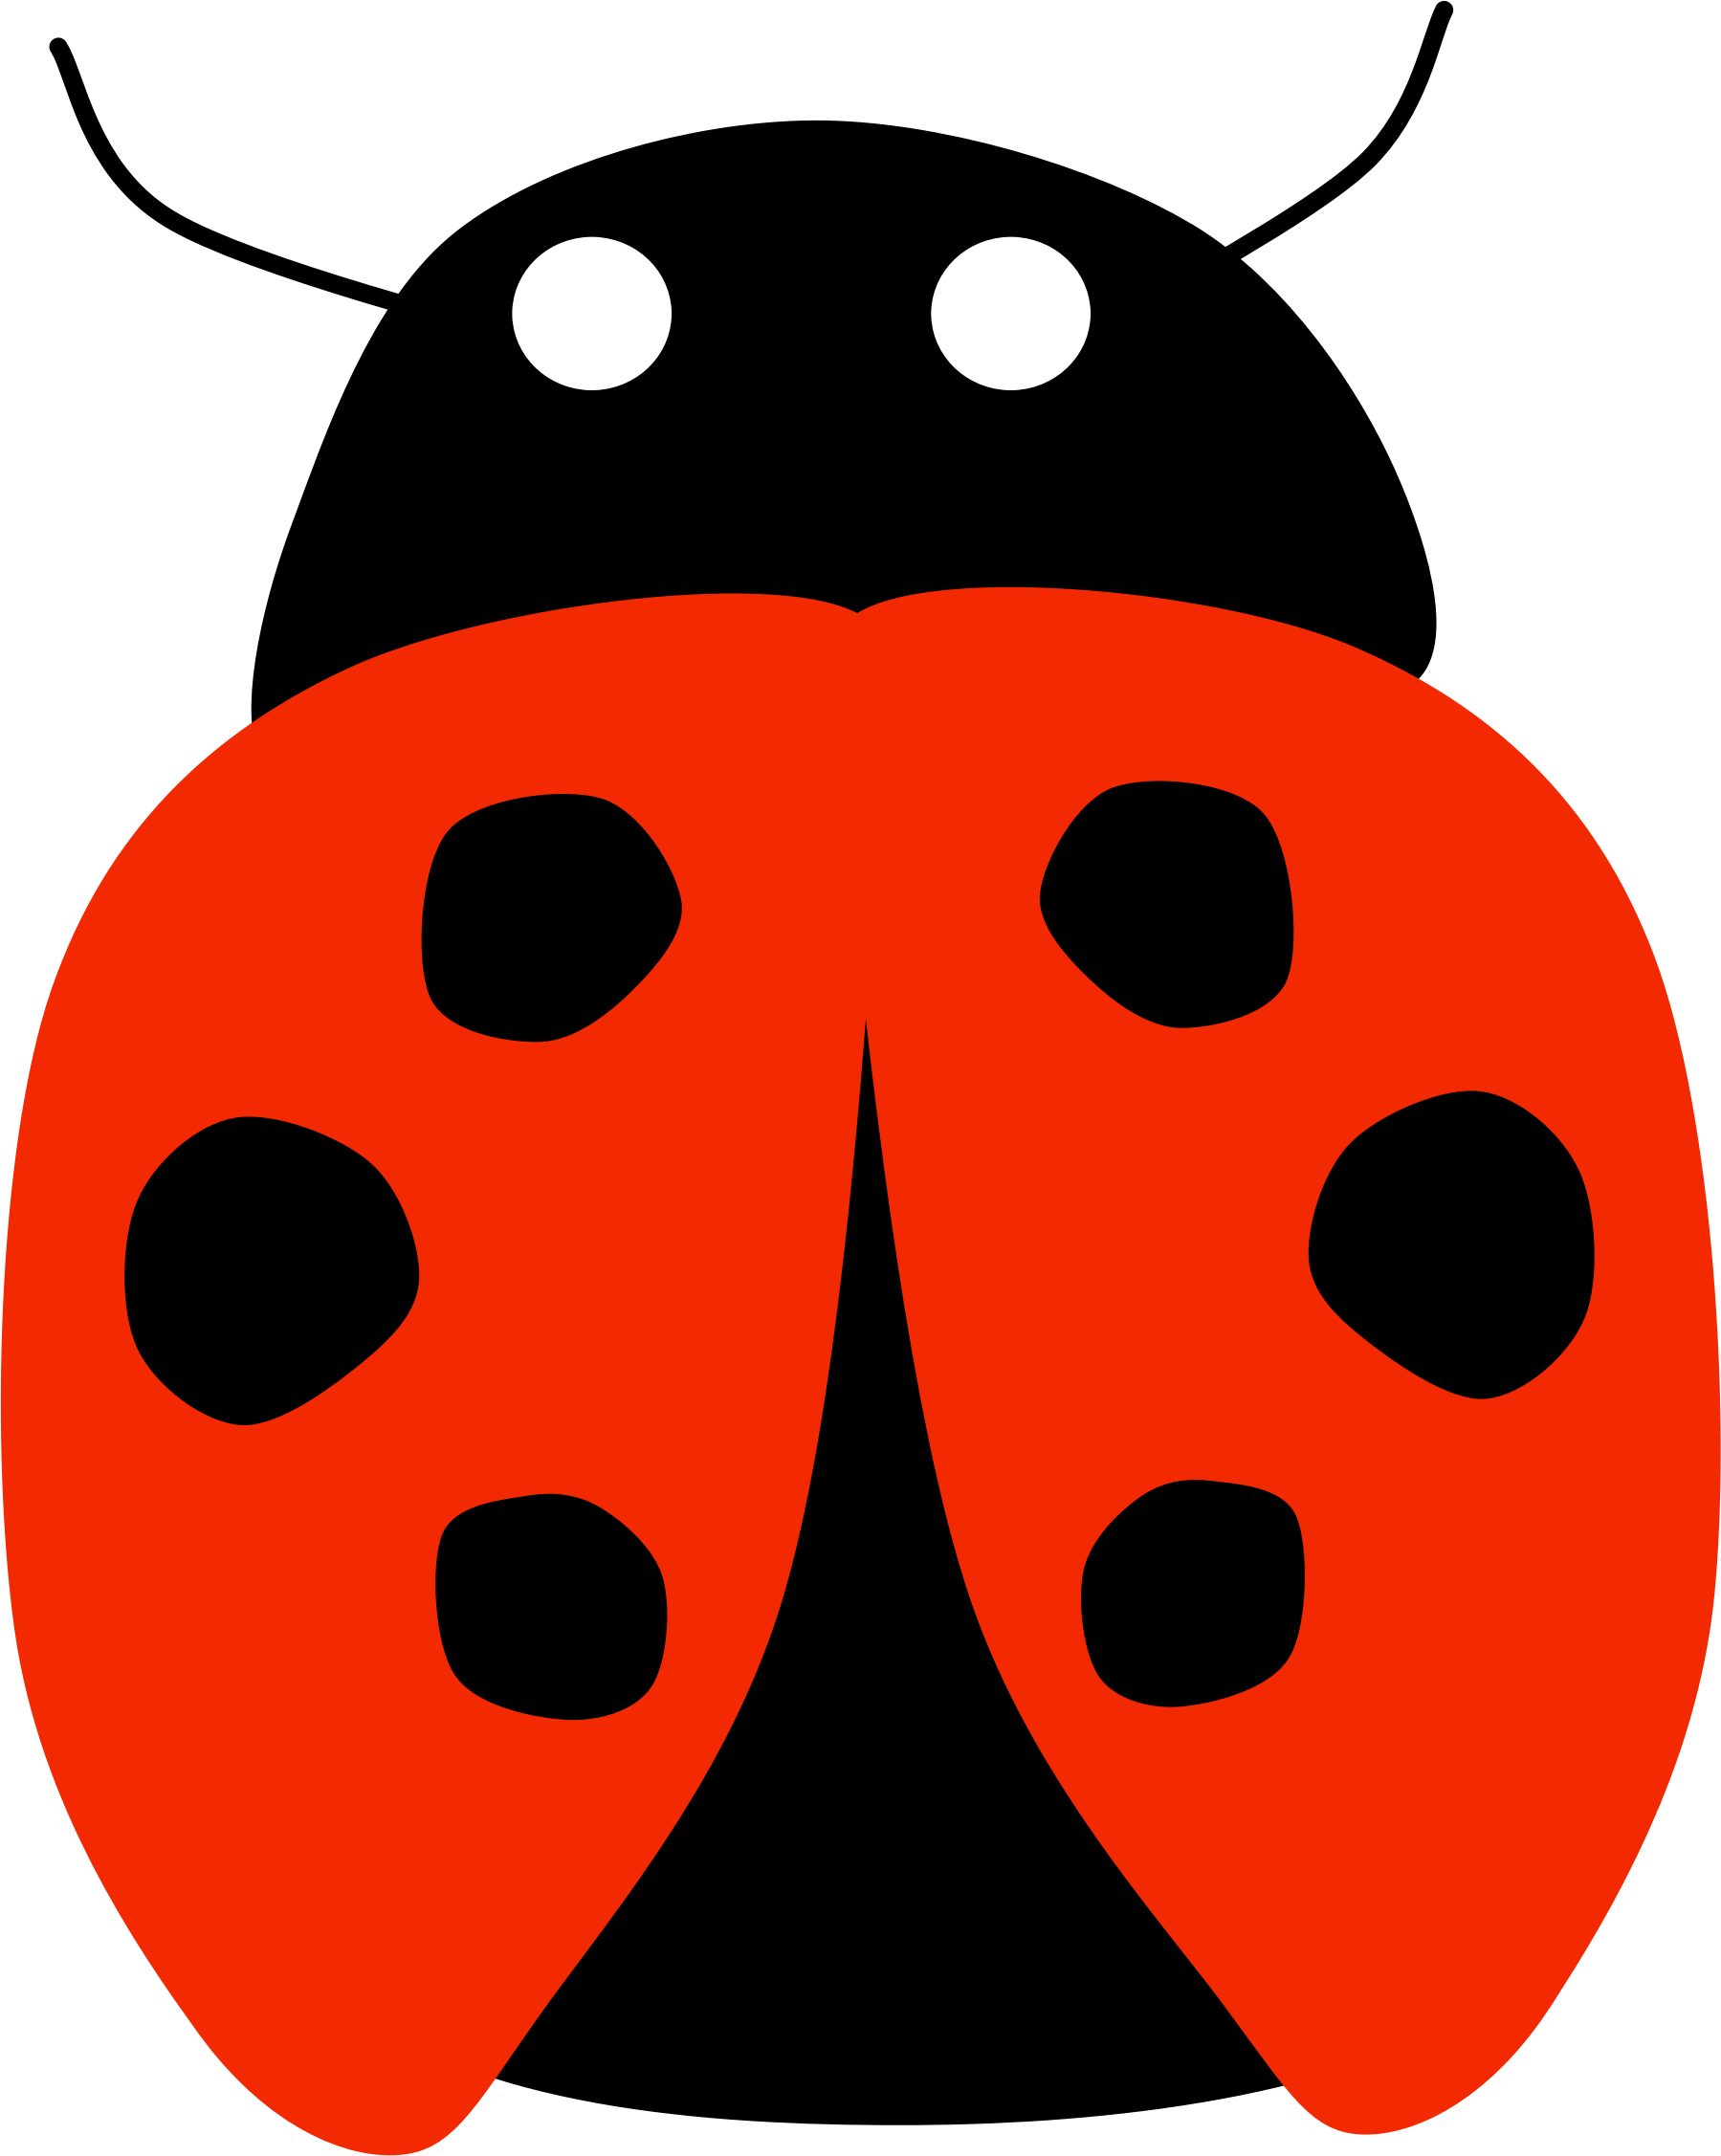 Ladybird beetle Ladybug, ladybug, fly away home - joaninha png download ...